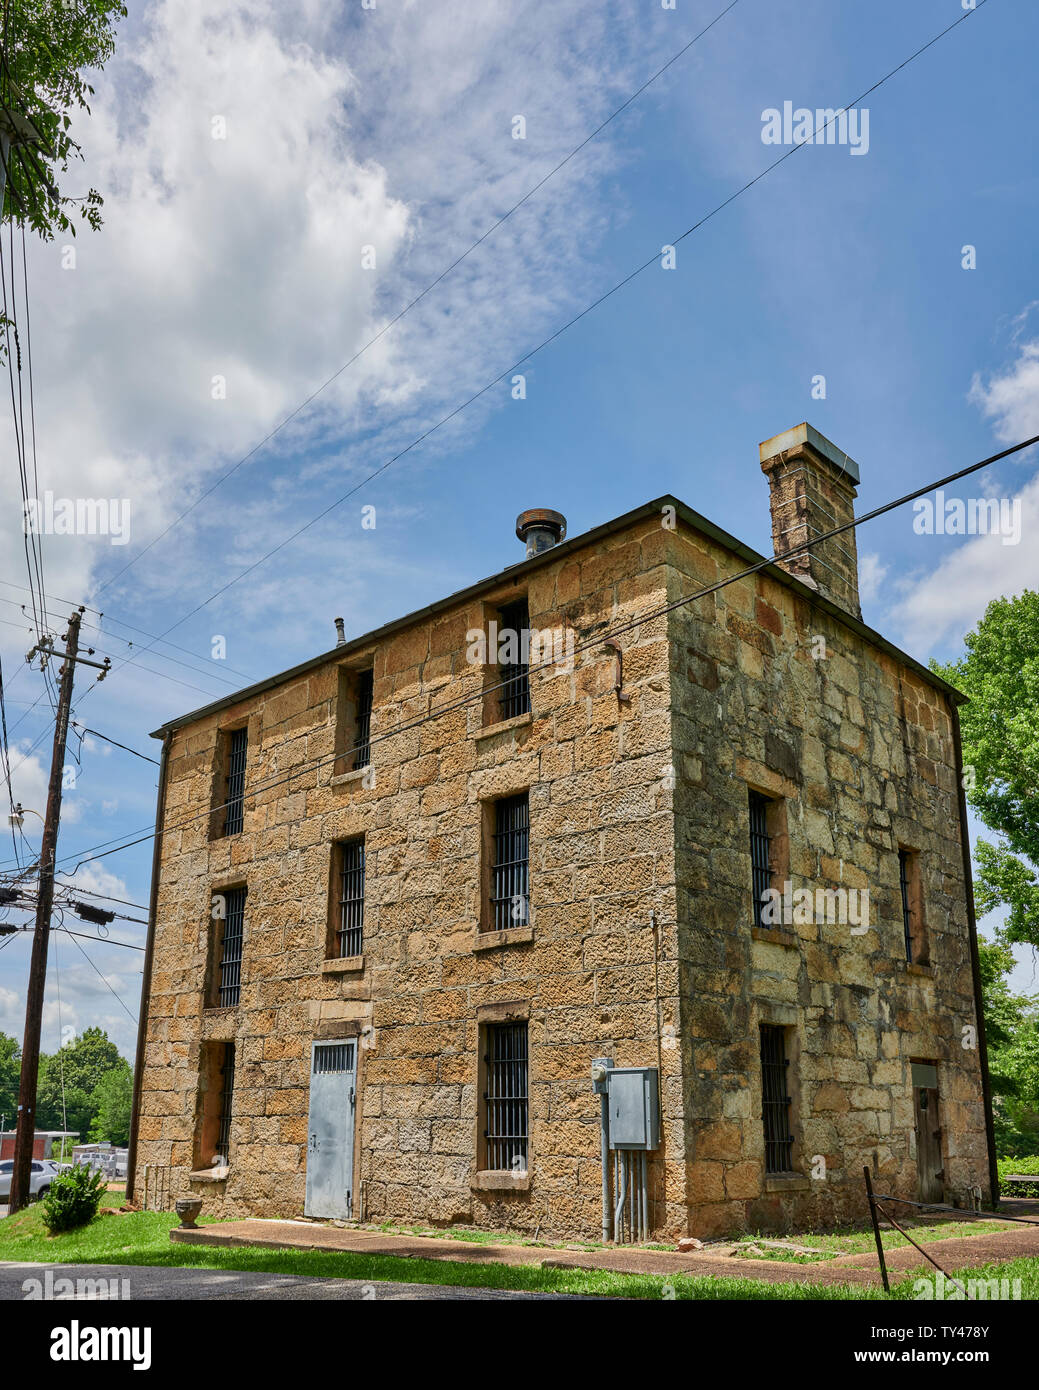 À partir de la vieille prison de pierre de 1800 toujours debout à Rockford Illinois, USA. Banque D'Images